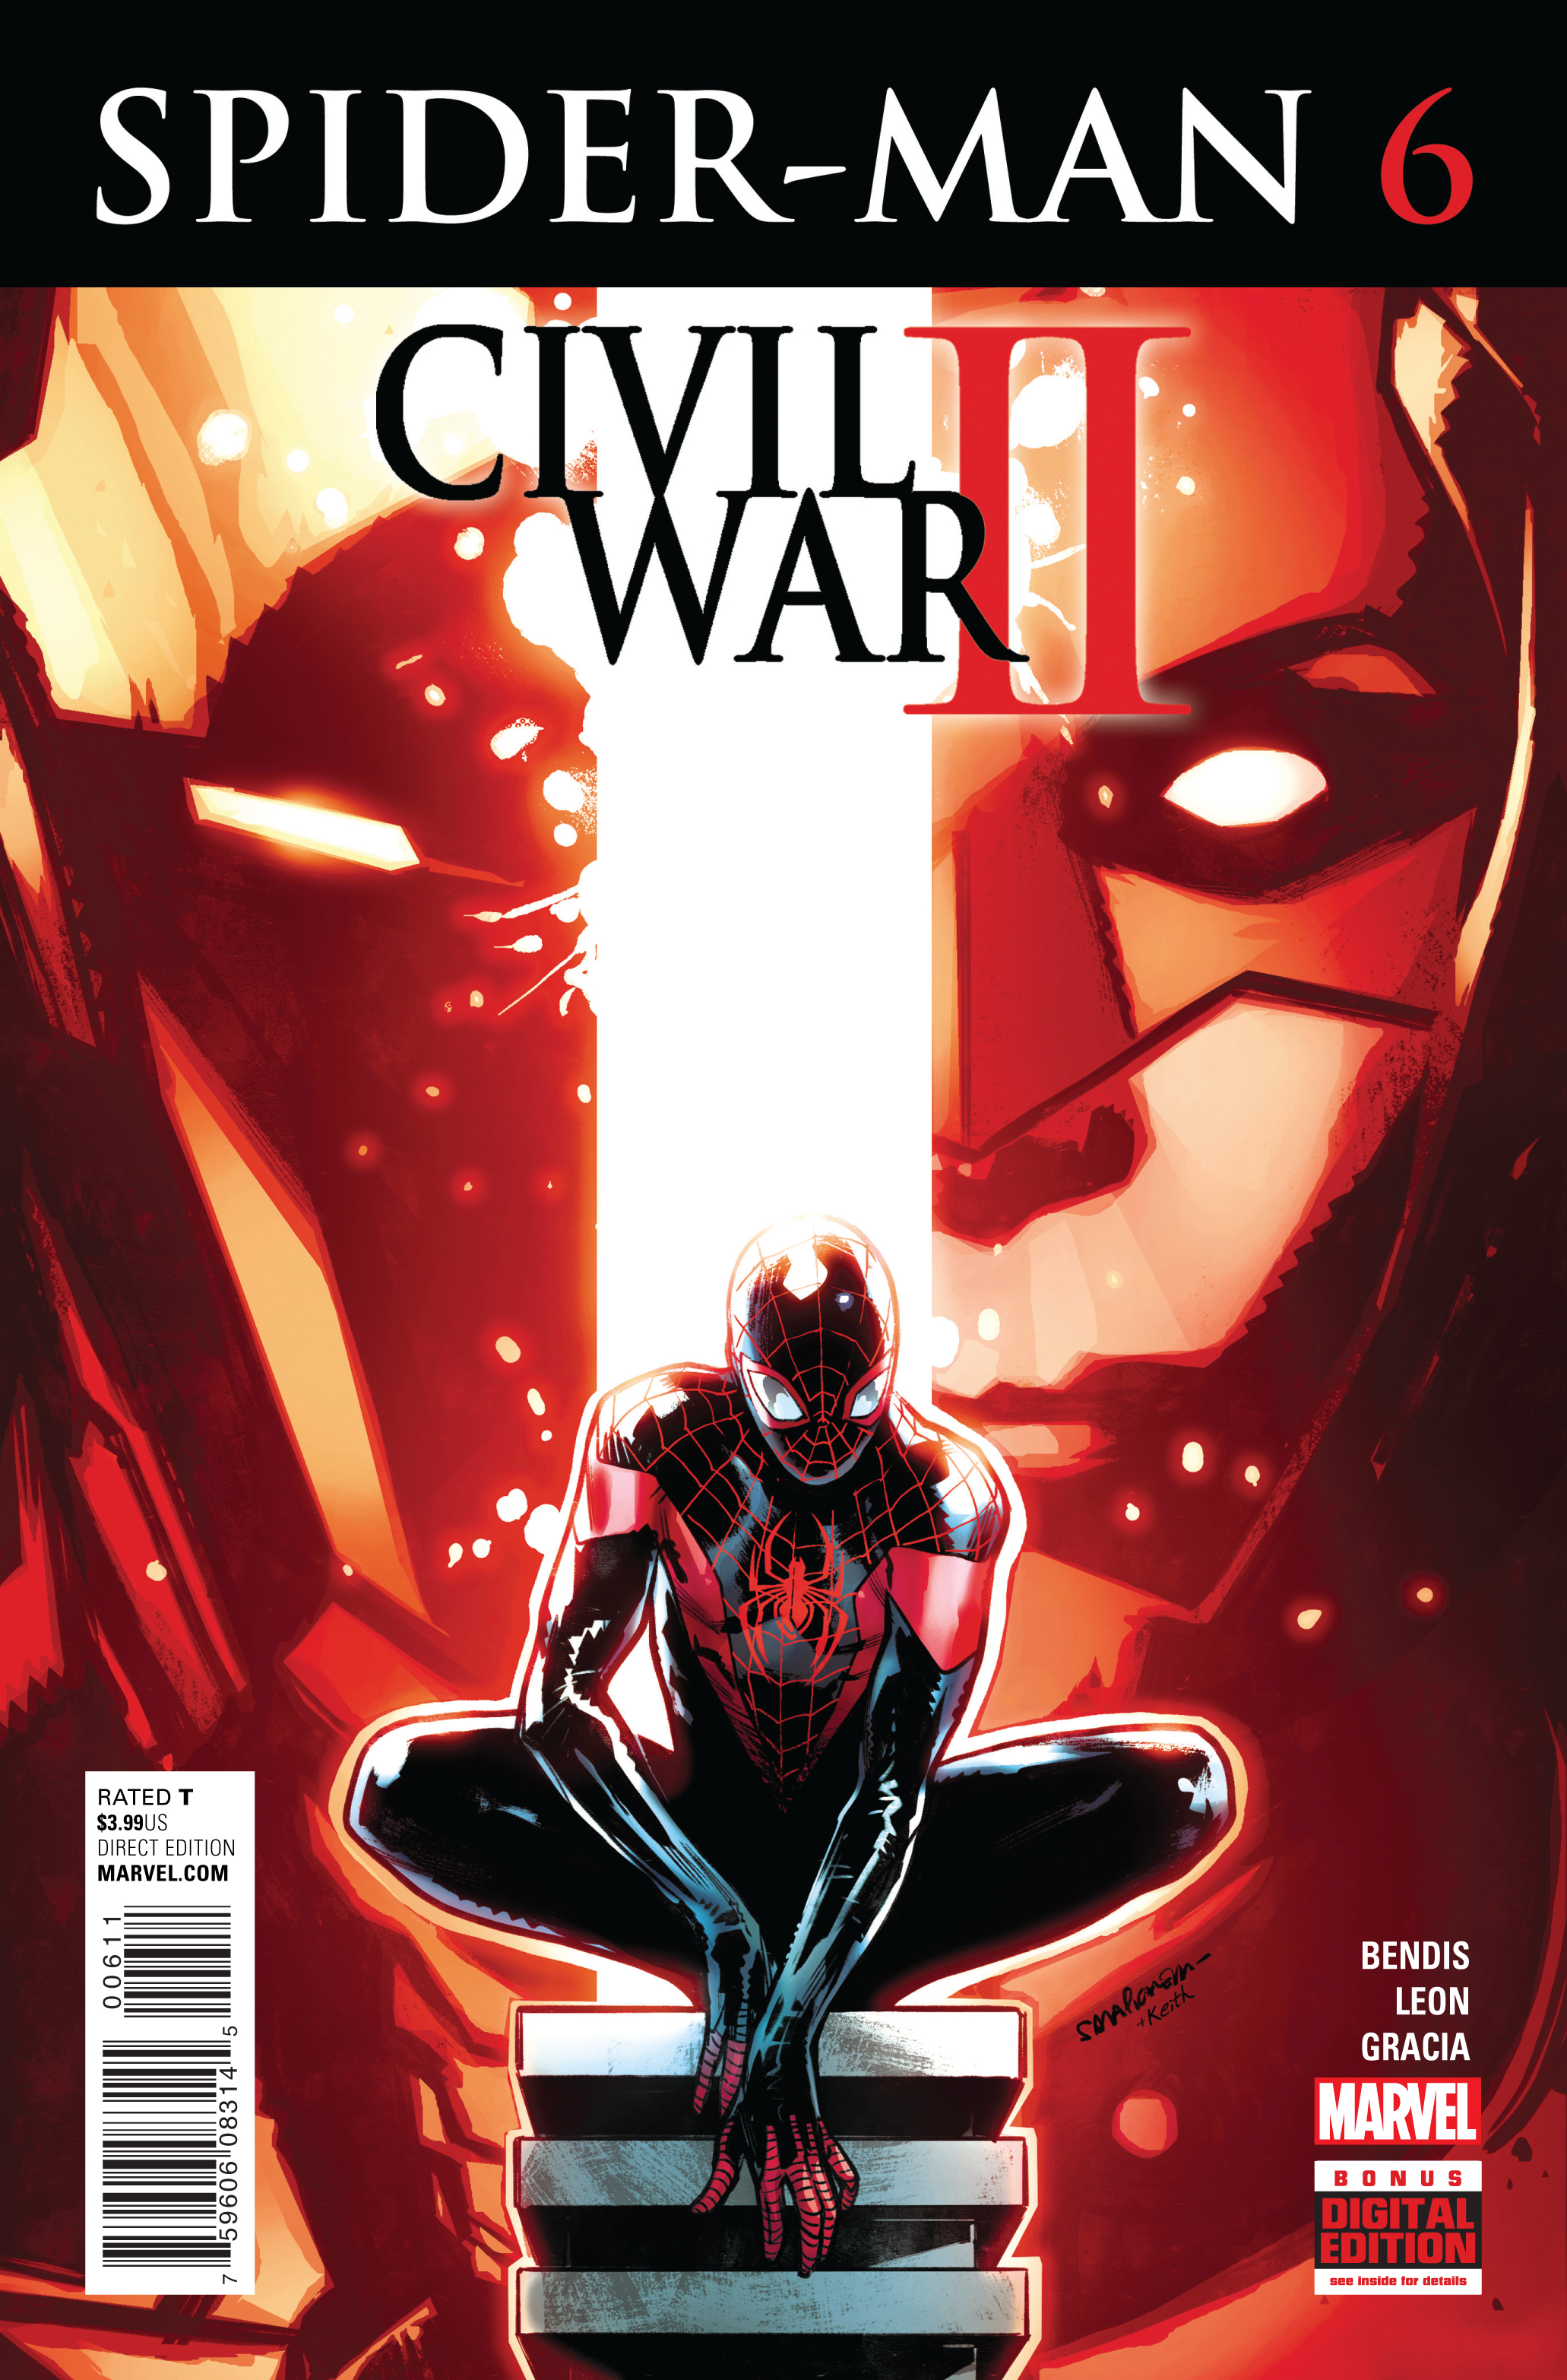 SPIDER-MAN #6 CW2